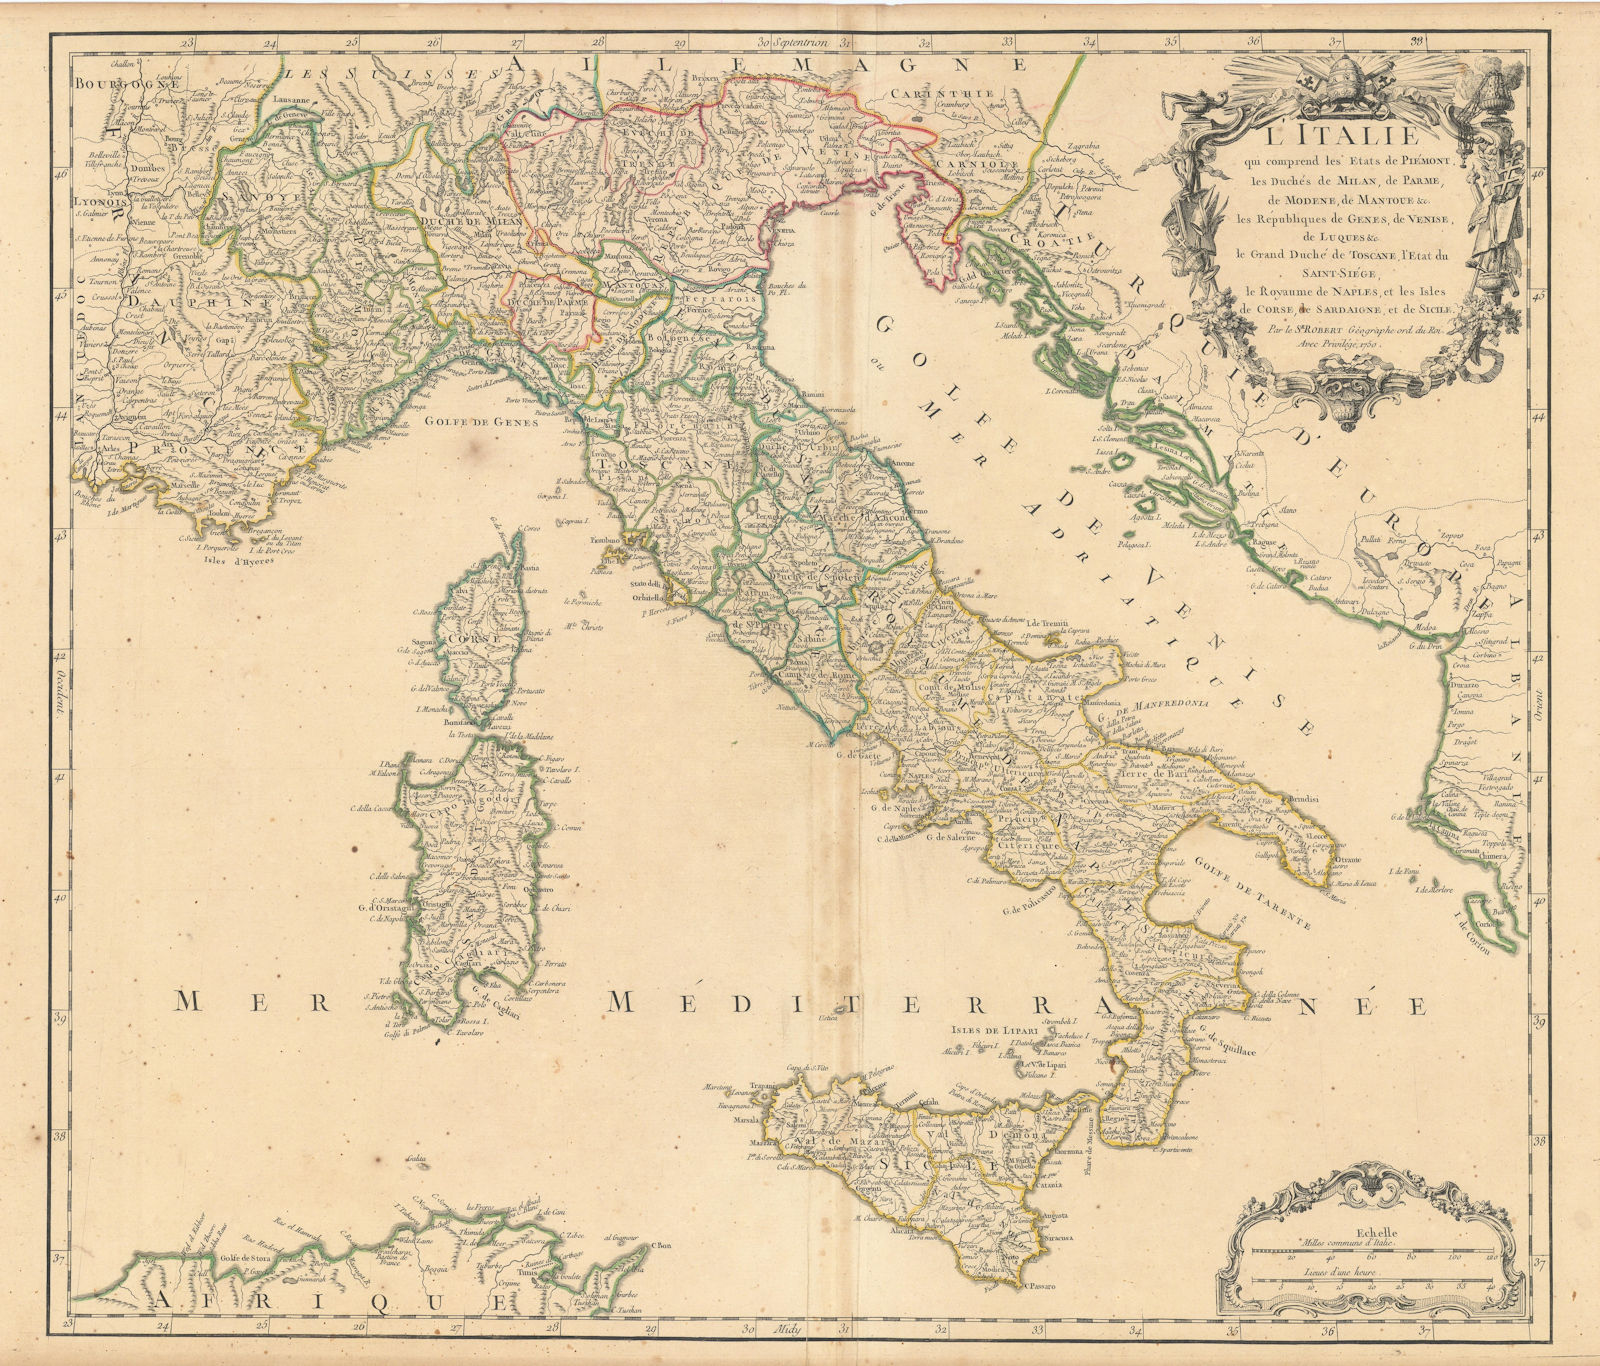 "L'Italie qui comprend les Etats de Piémont…" Italy. ROBERT DE VAUGONDY 1750 map